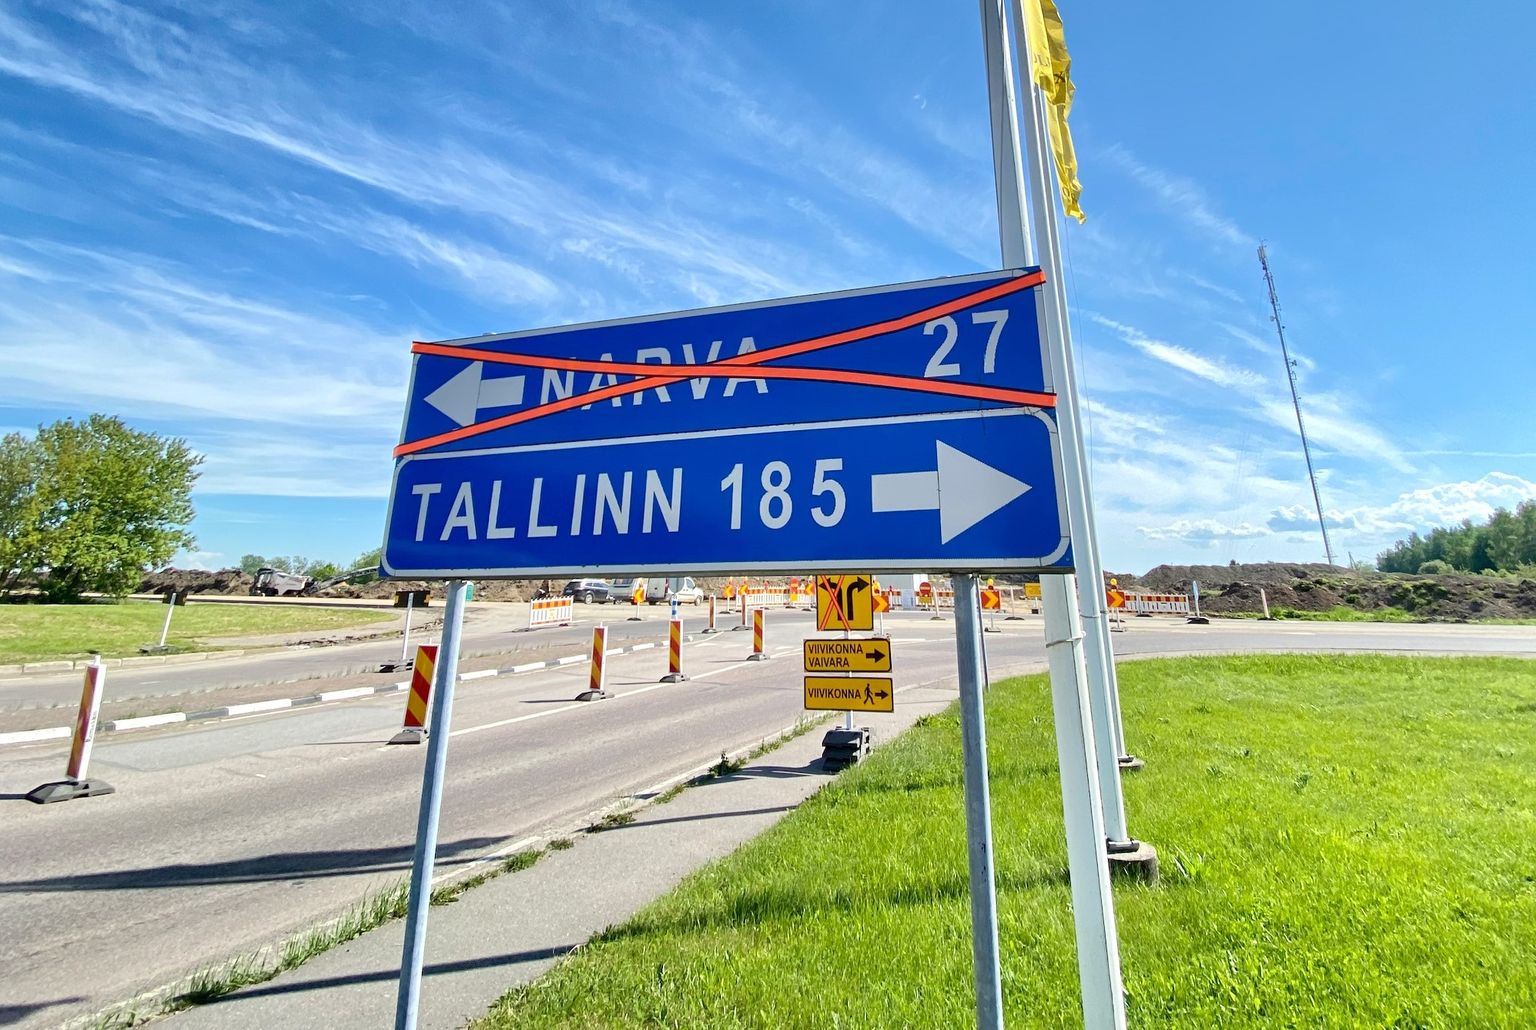 Ida-Virumaa suurim linn Narva on kaotanud nelja viimase aastaga ligamale 5000 elaniku, kellest osad on heade töökohtade puuduse tõttu kolinud Tallinna.  Kuid Narva elab veel üle 53 000 inimese ja see on Eesti suurusel kolmas linn.